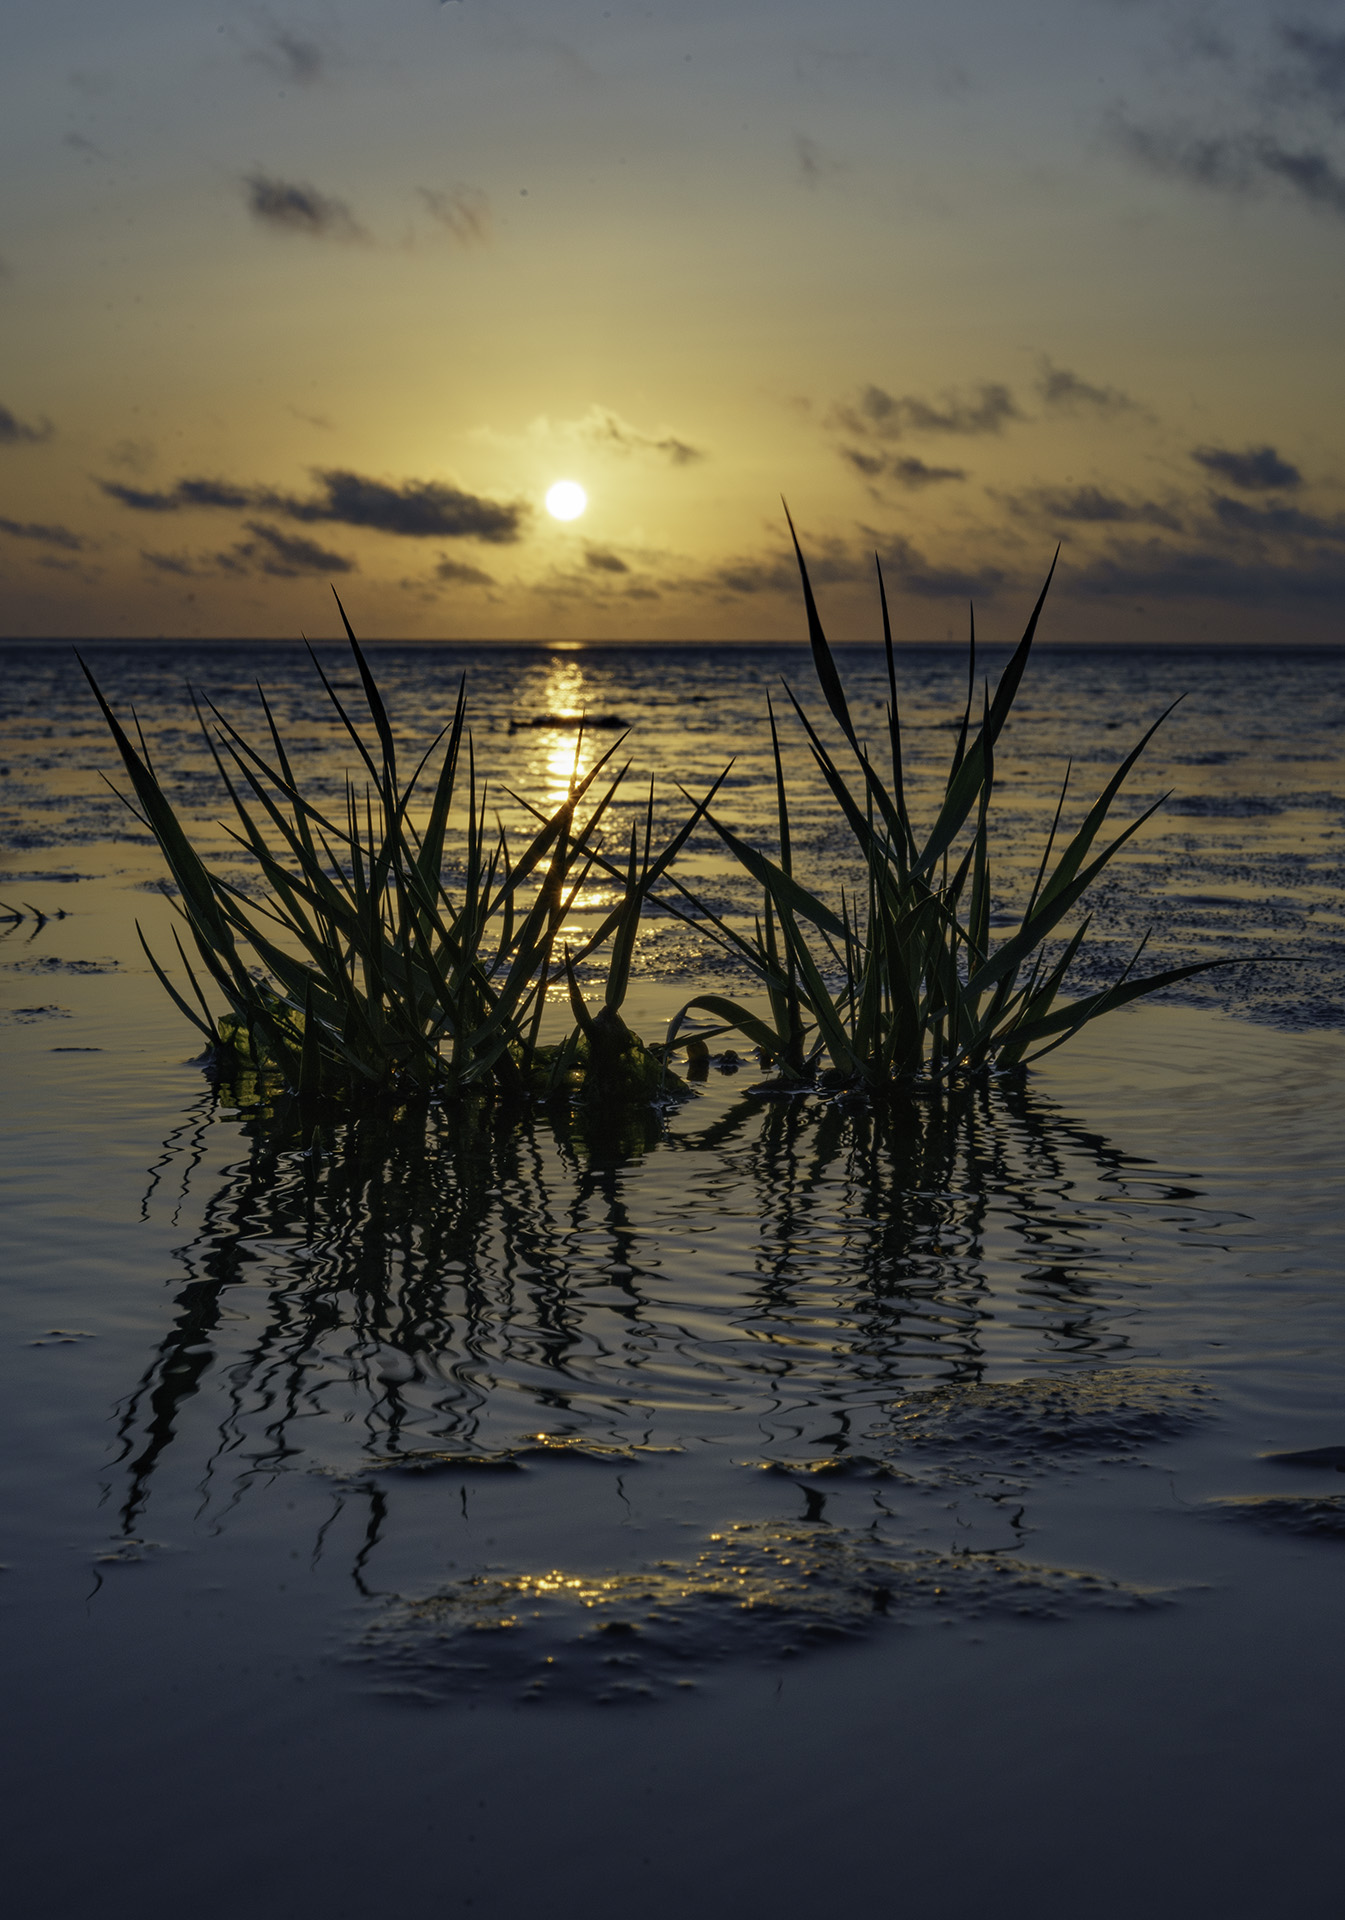 Sonnenuntergang im Wattenmeer mit Seegras im Vordergrund, Copyright Stephan Siemon